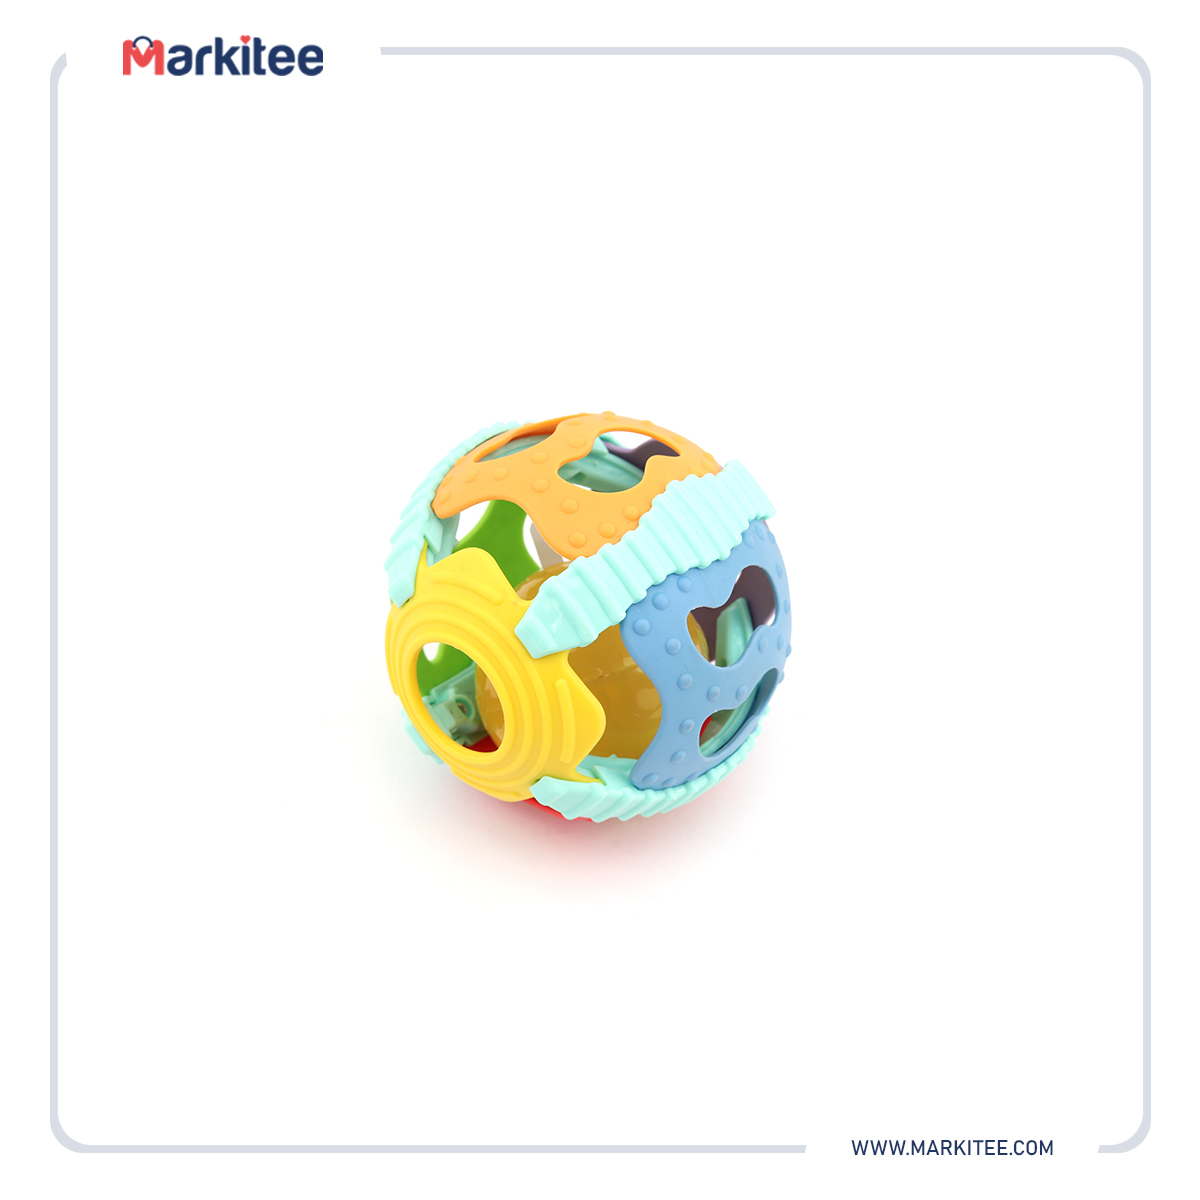 ماركيتي-markitee-20220515100907087_Markitee-Toys-TY-42(4).jpg